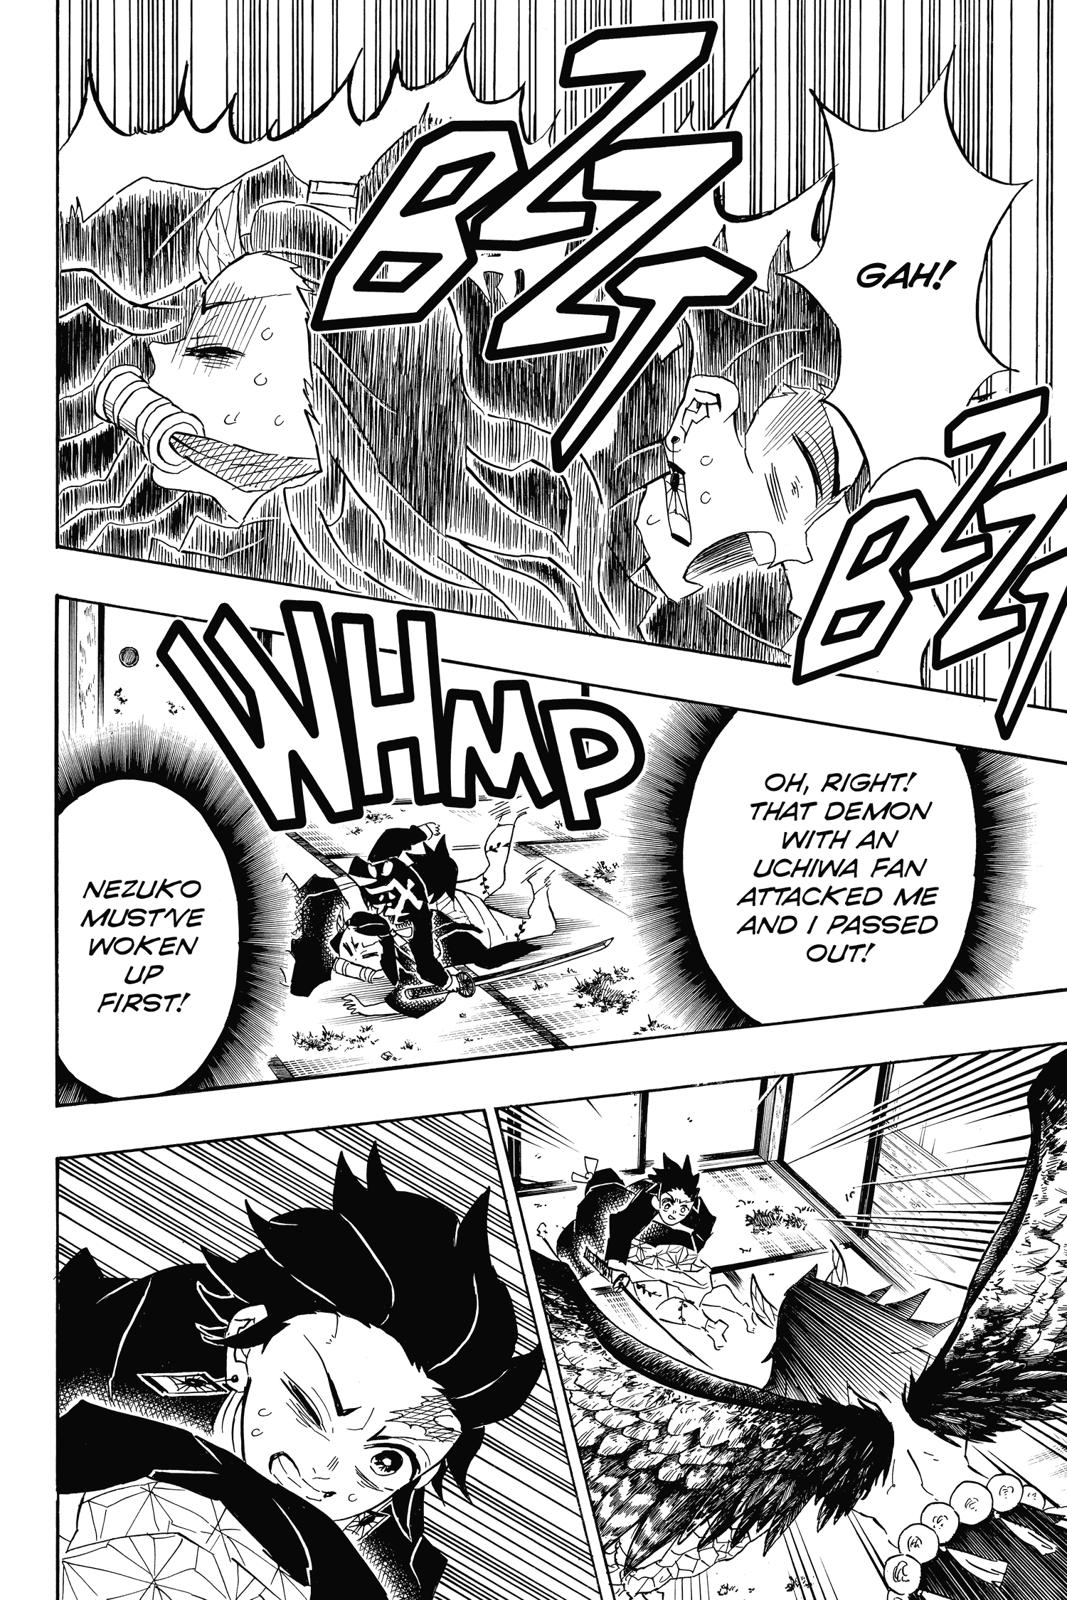 Demon Slayer Manga Manga Chapter - 112 - image 16